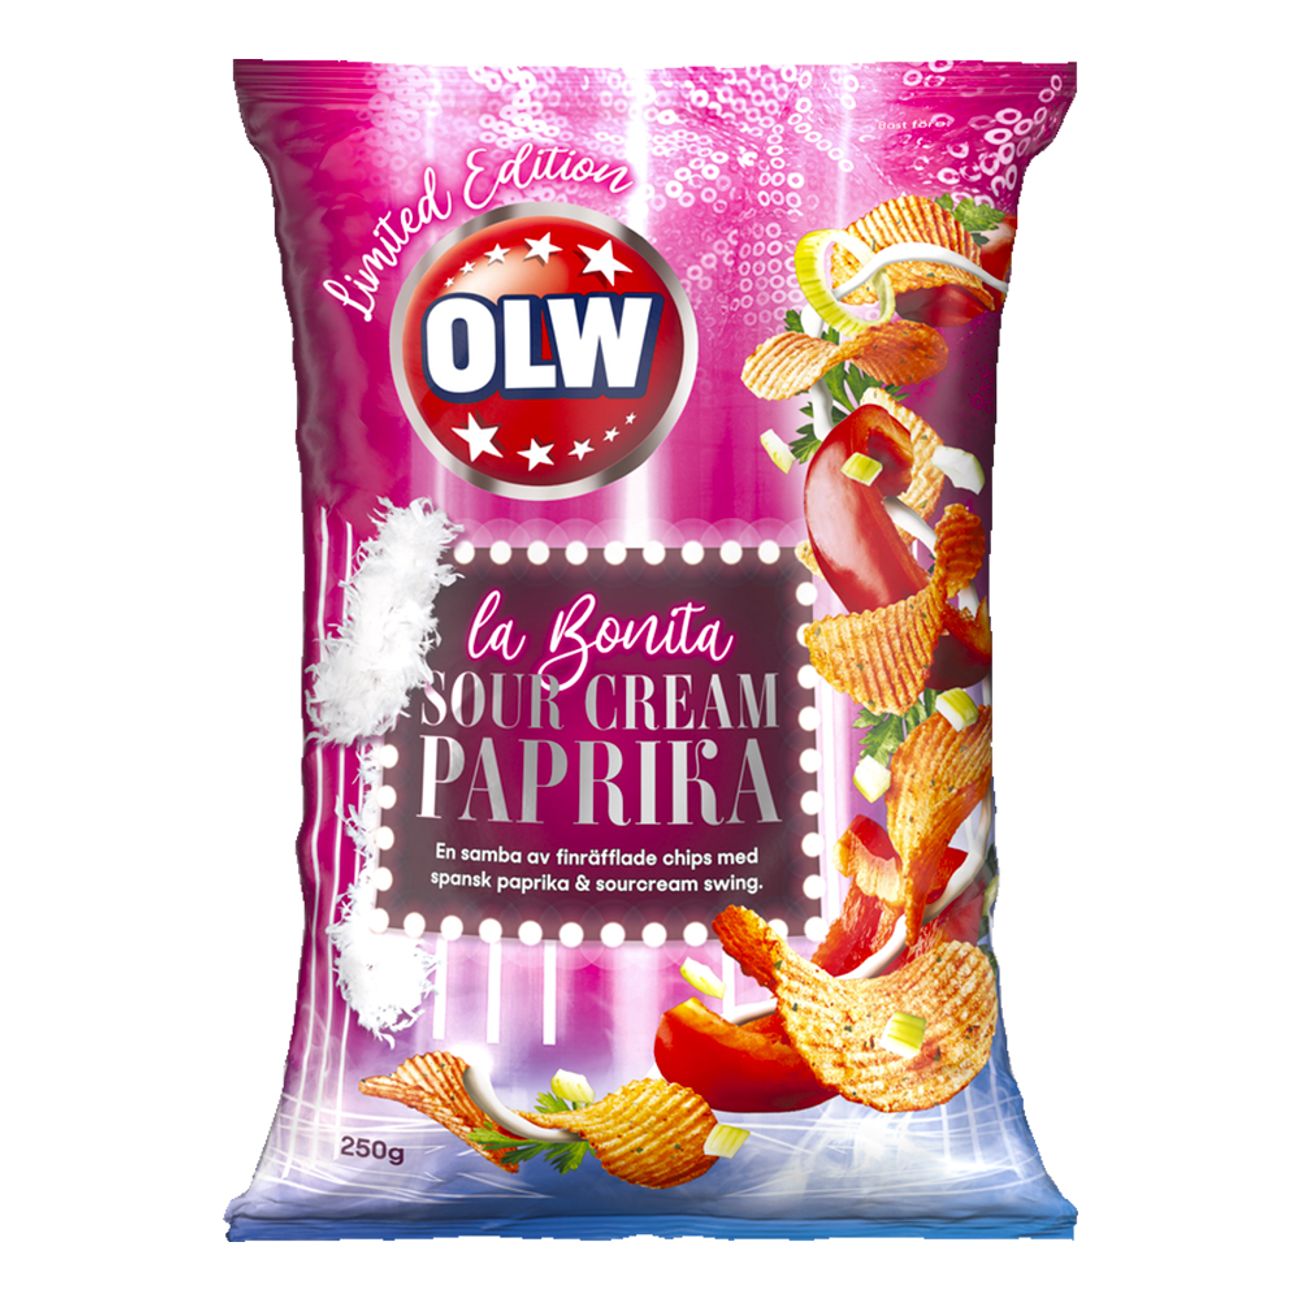 olw-sourcream-paprika-82516-1